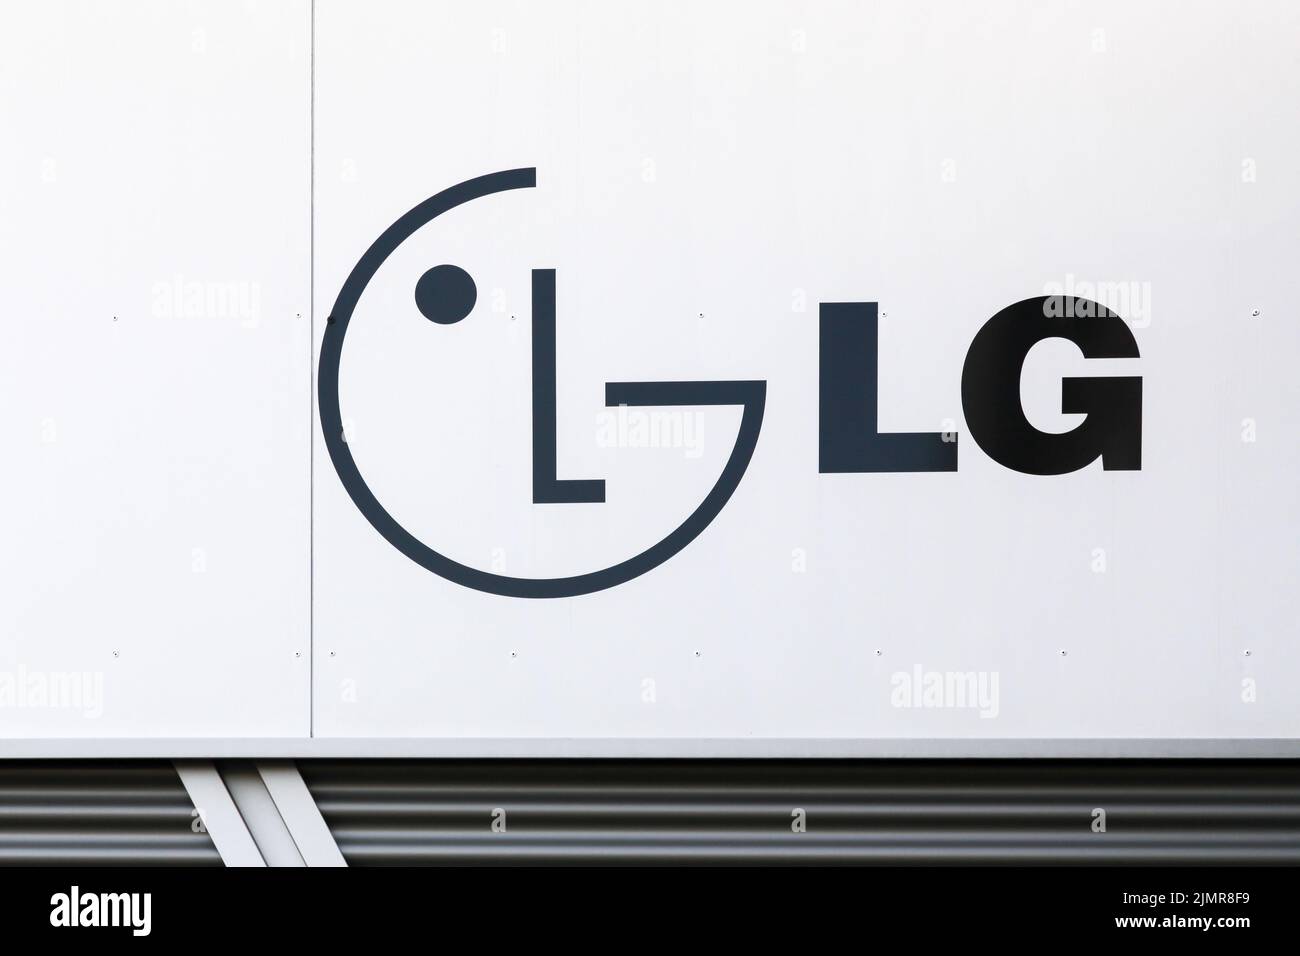 Dortmund, Alemania - 21 de julio de 2017: LG Corporation Anteriormente Lucky Goldstar es una multinacional surcoreana. LG fabrica productos electrónicos y químicos Foto de stock